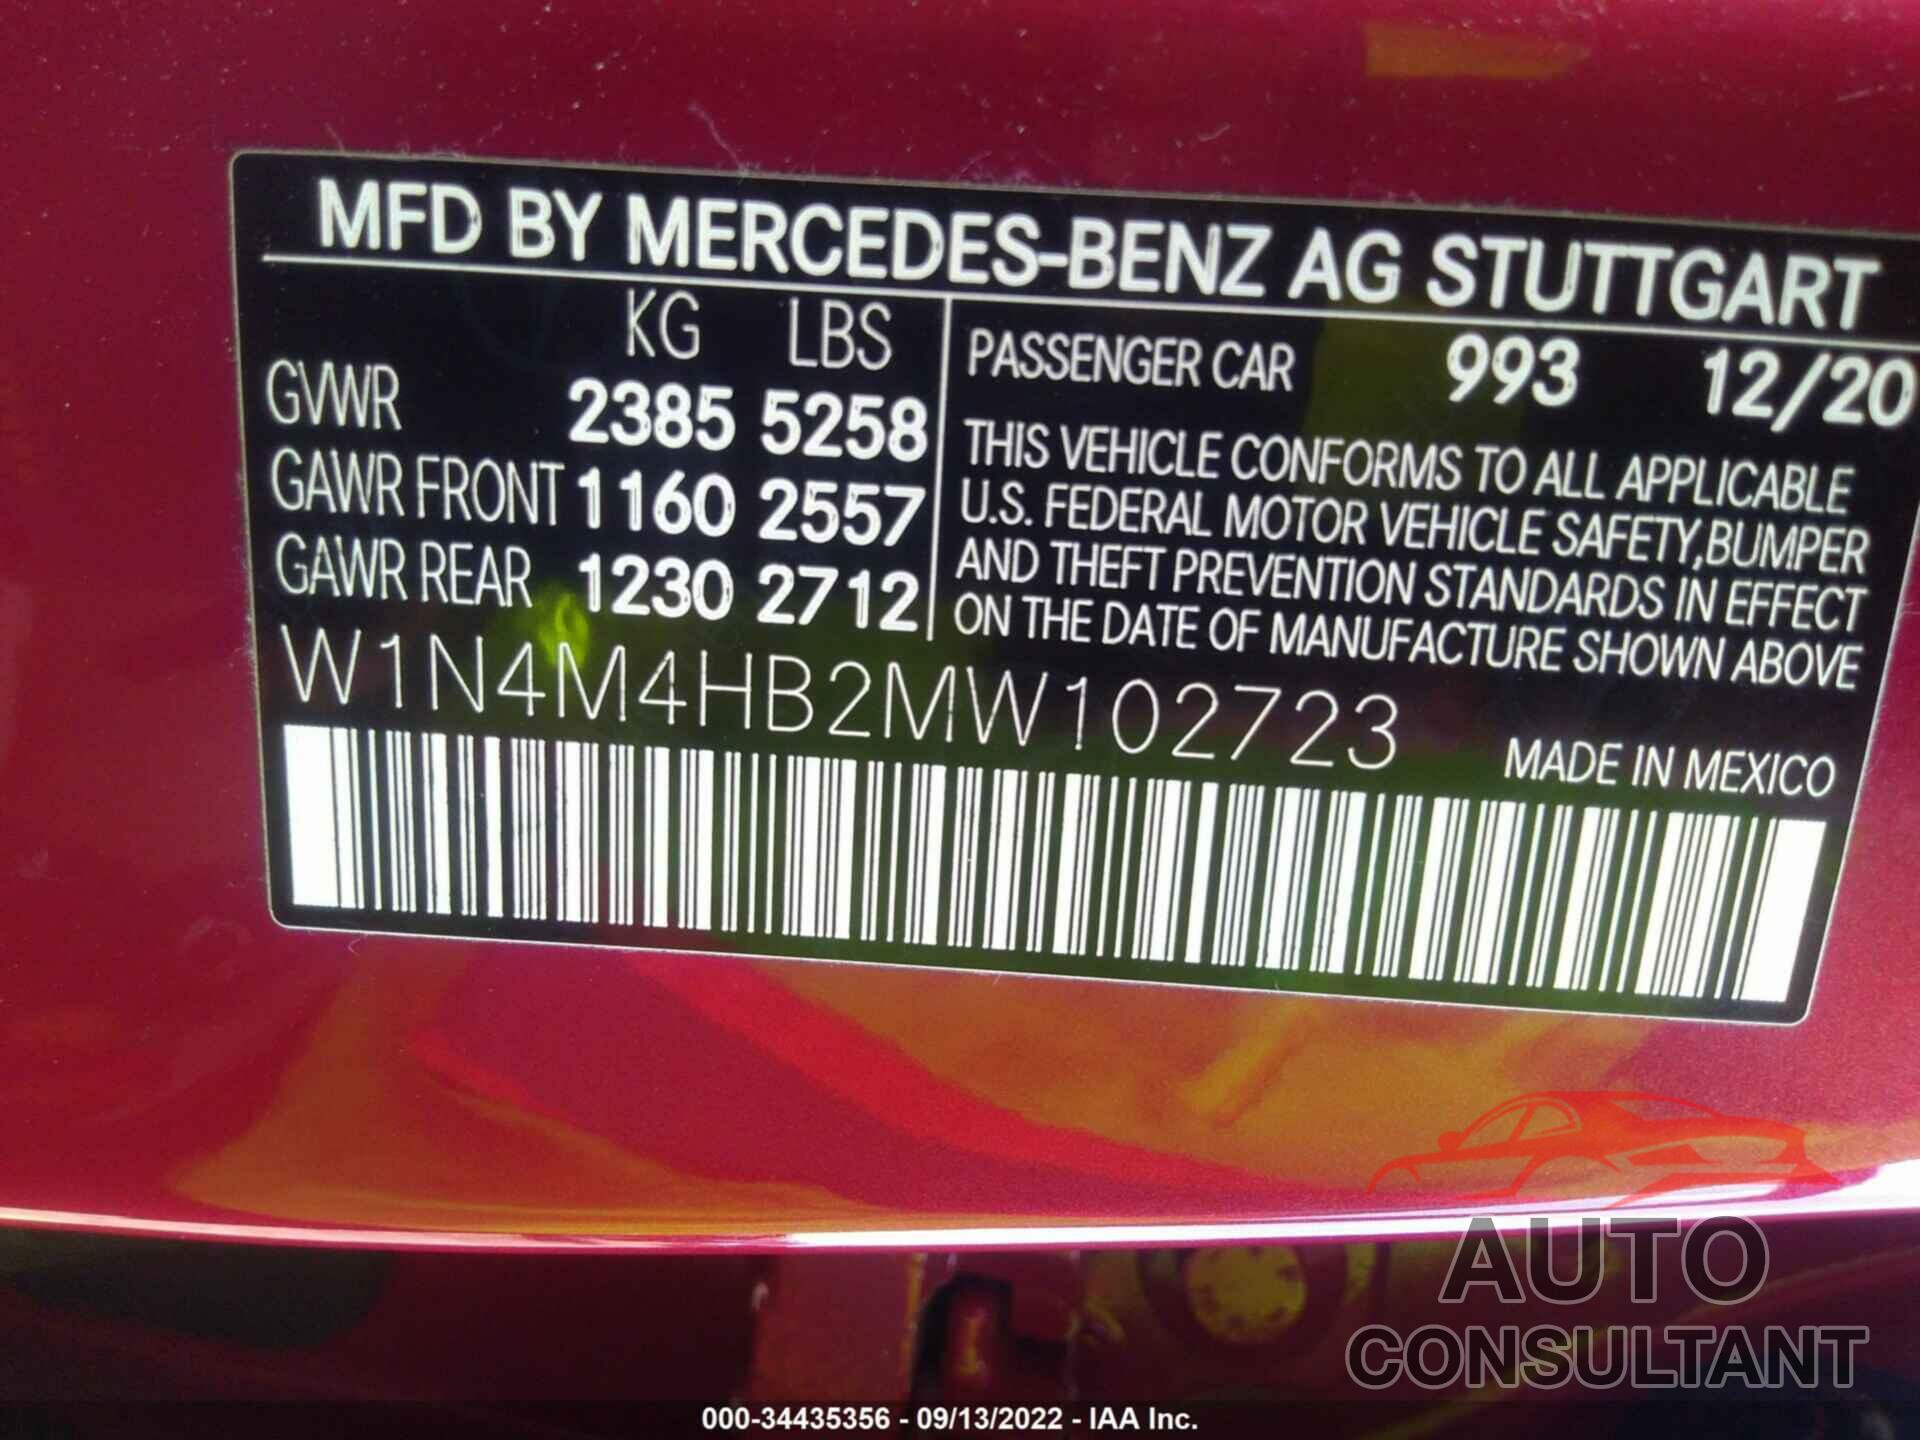 MERCEDES-BENZ GLB 2021 - W1N4M4HB2MW102723